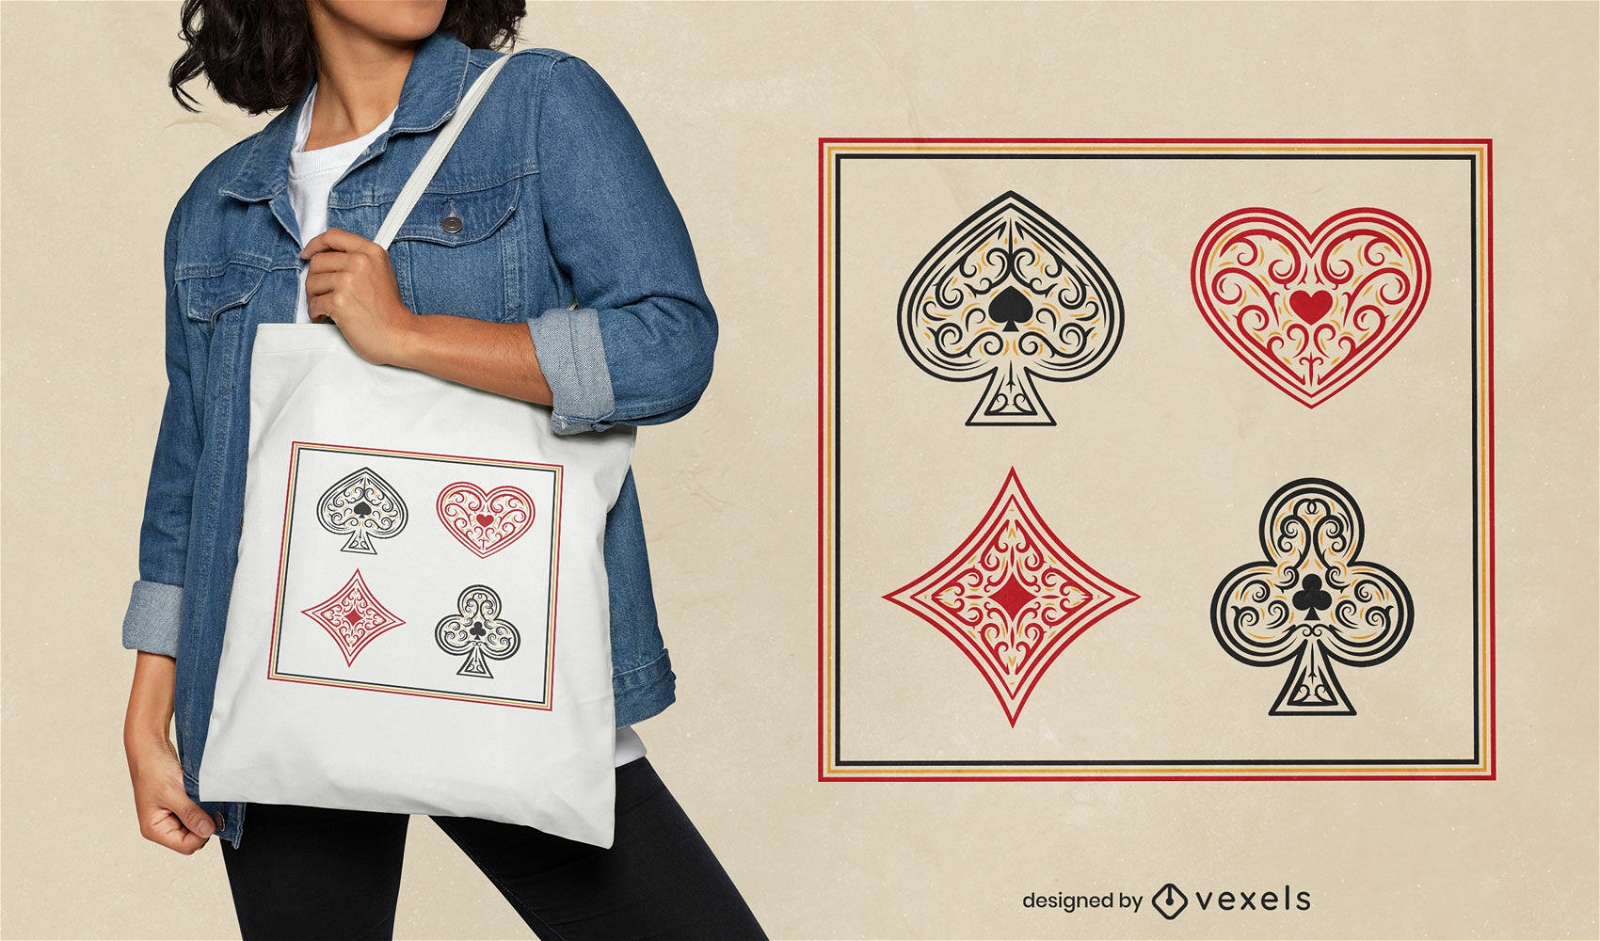 Design der Einkaufstasche mit Kartensymbolen